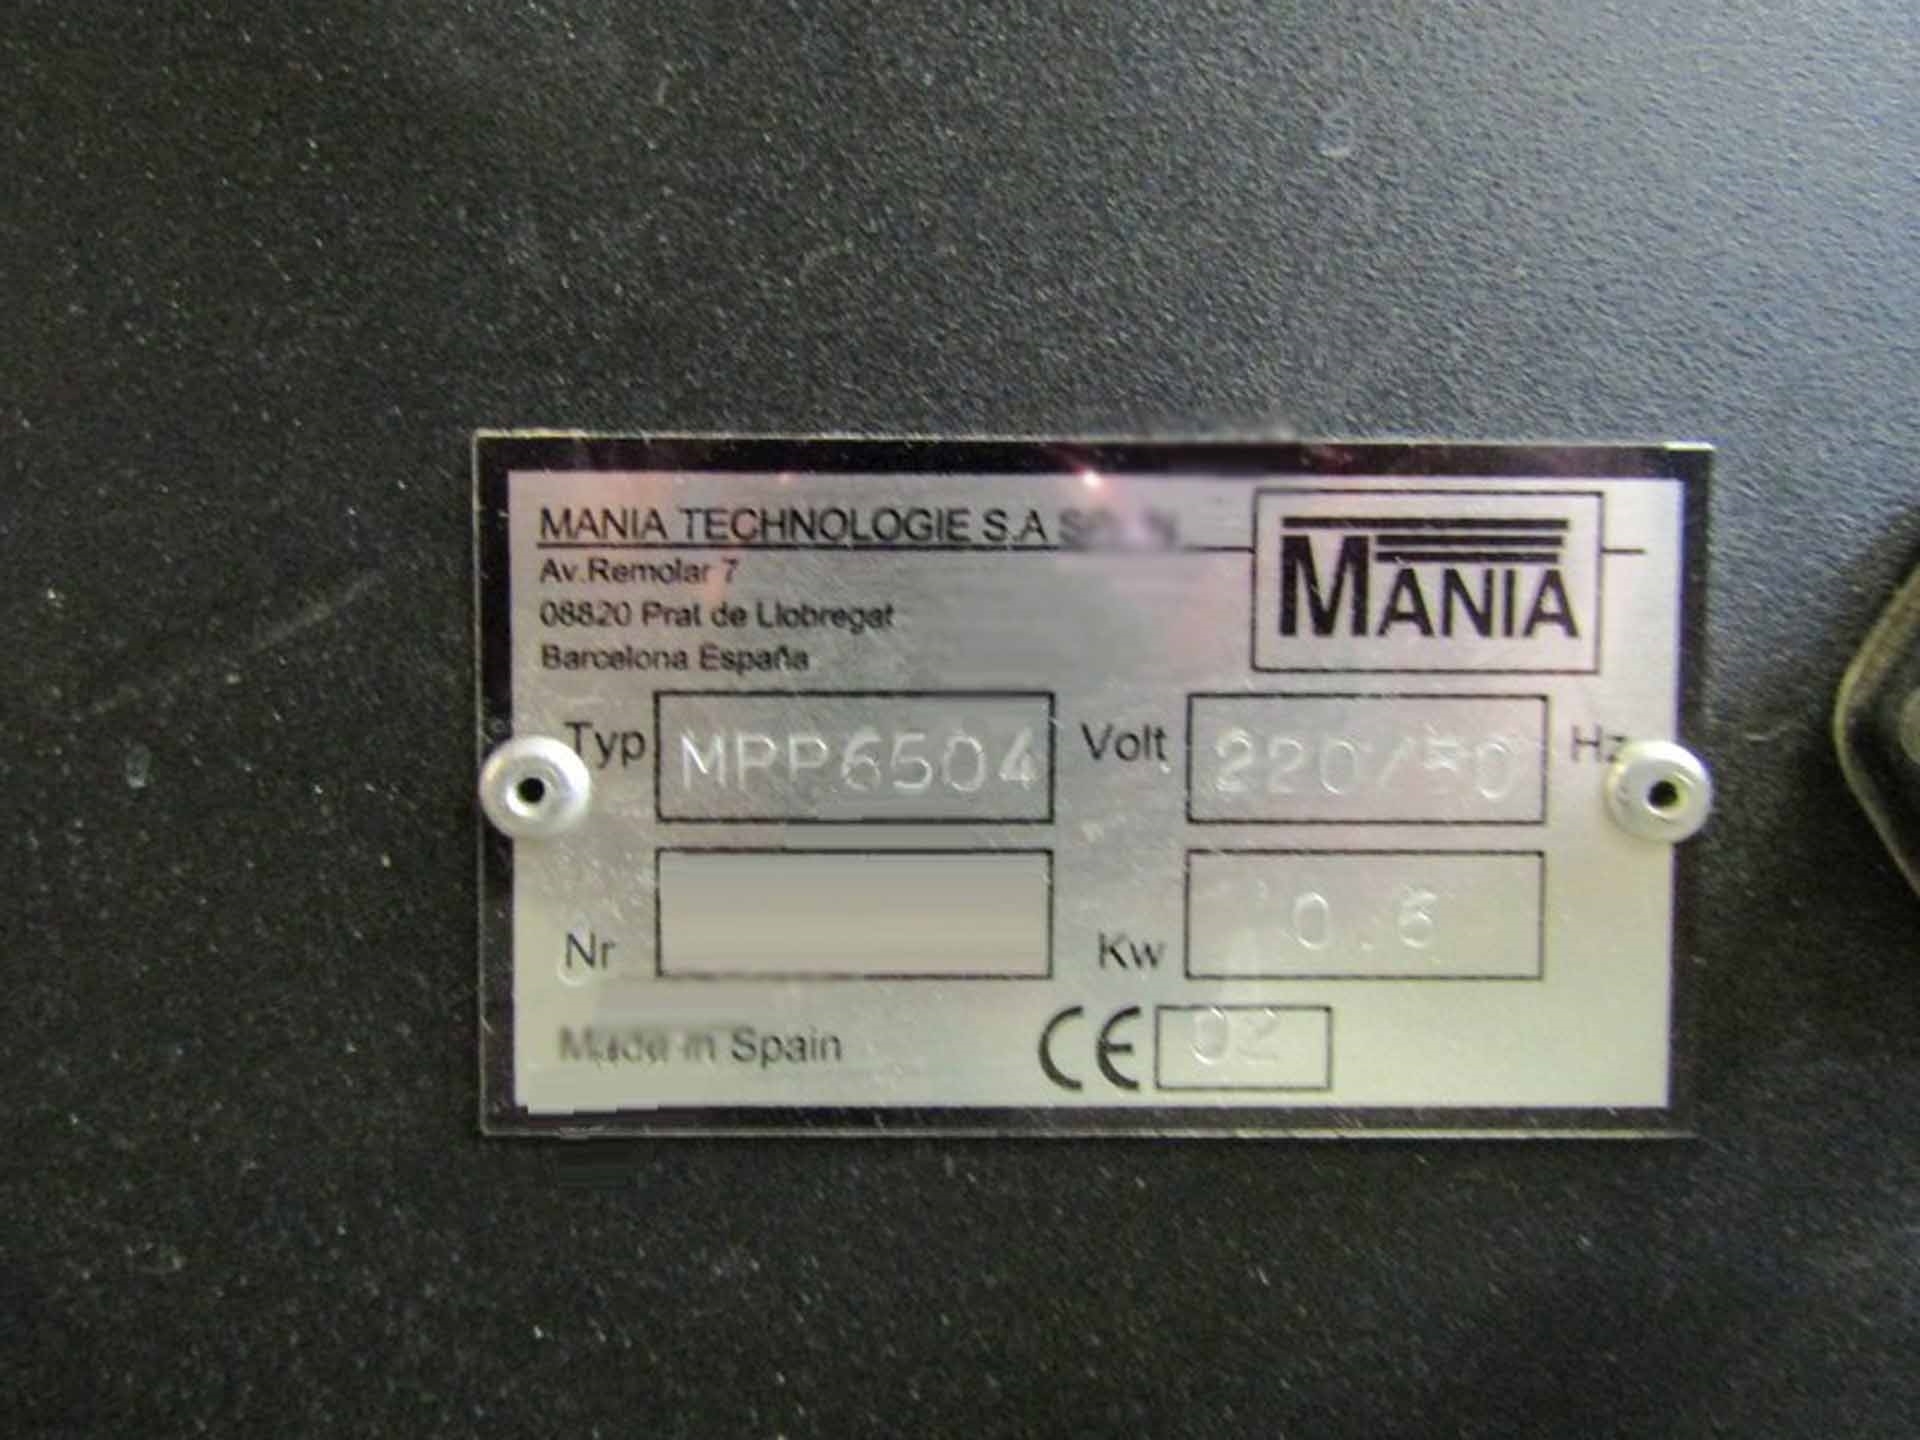 图为 已使用的 MANIA Pegasus MPP 6504 待售